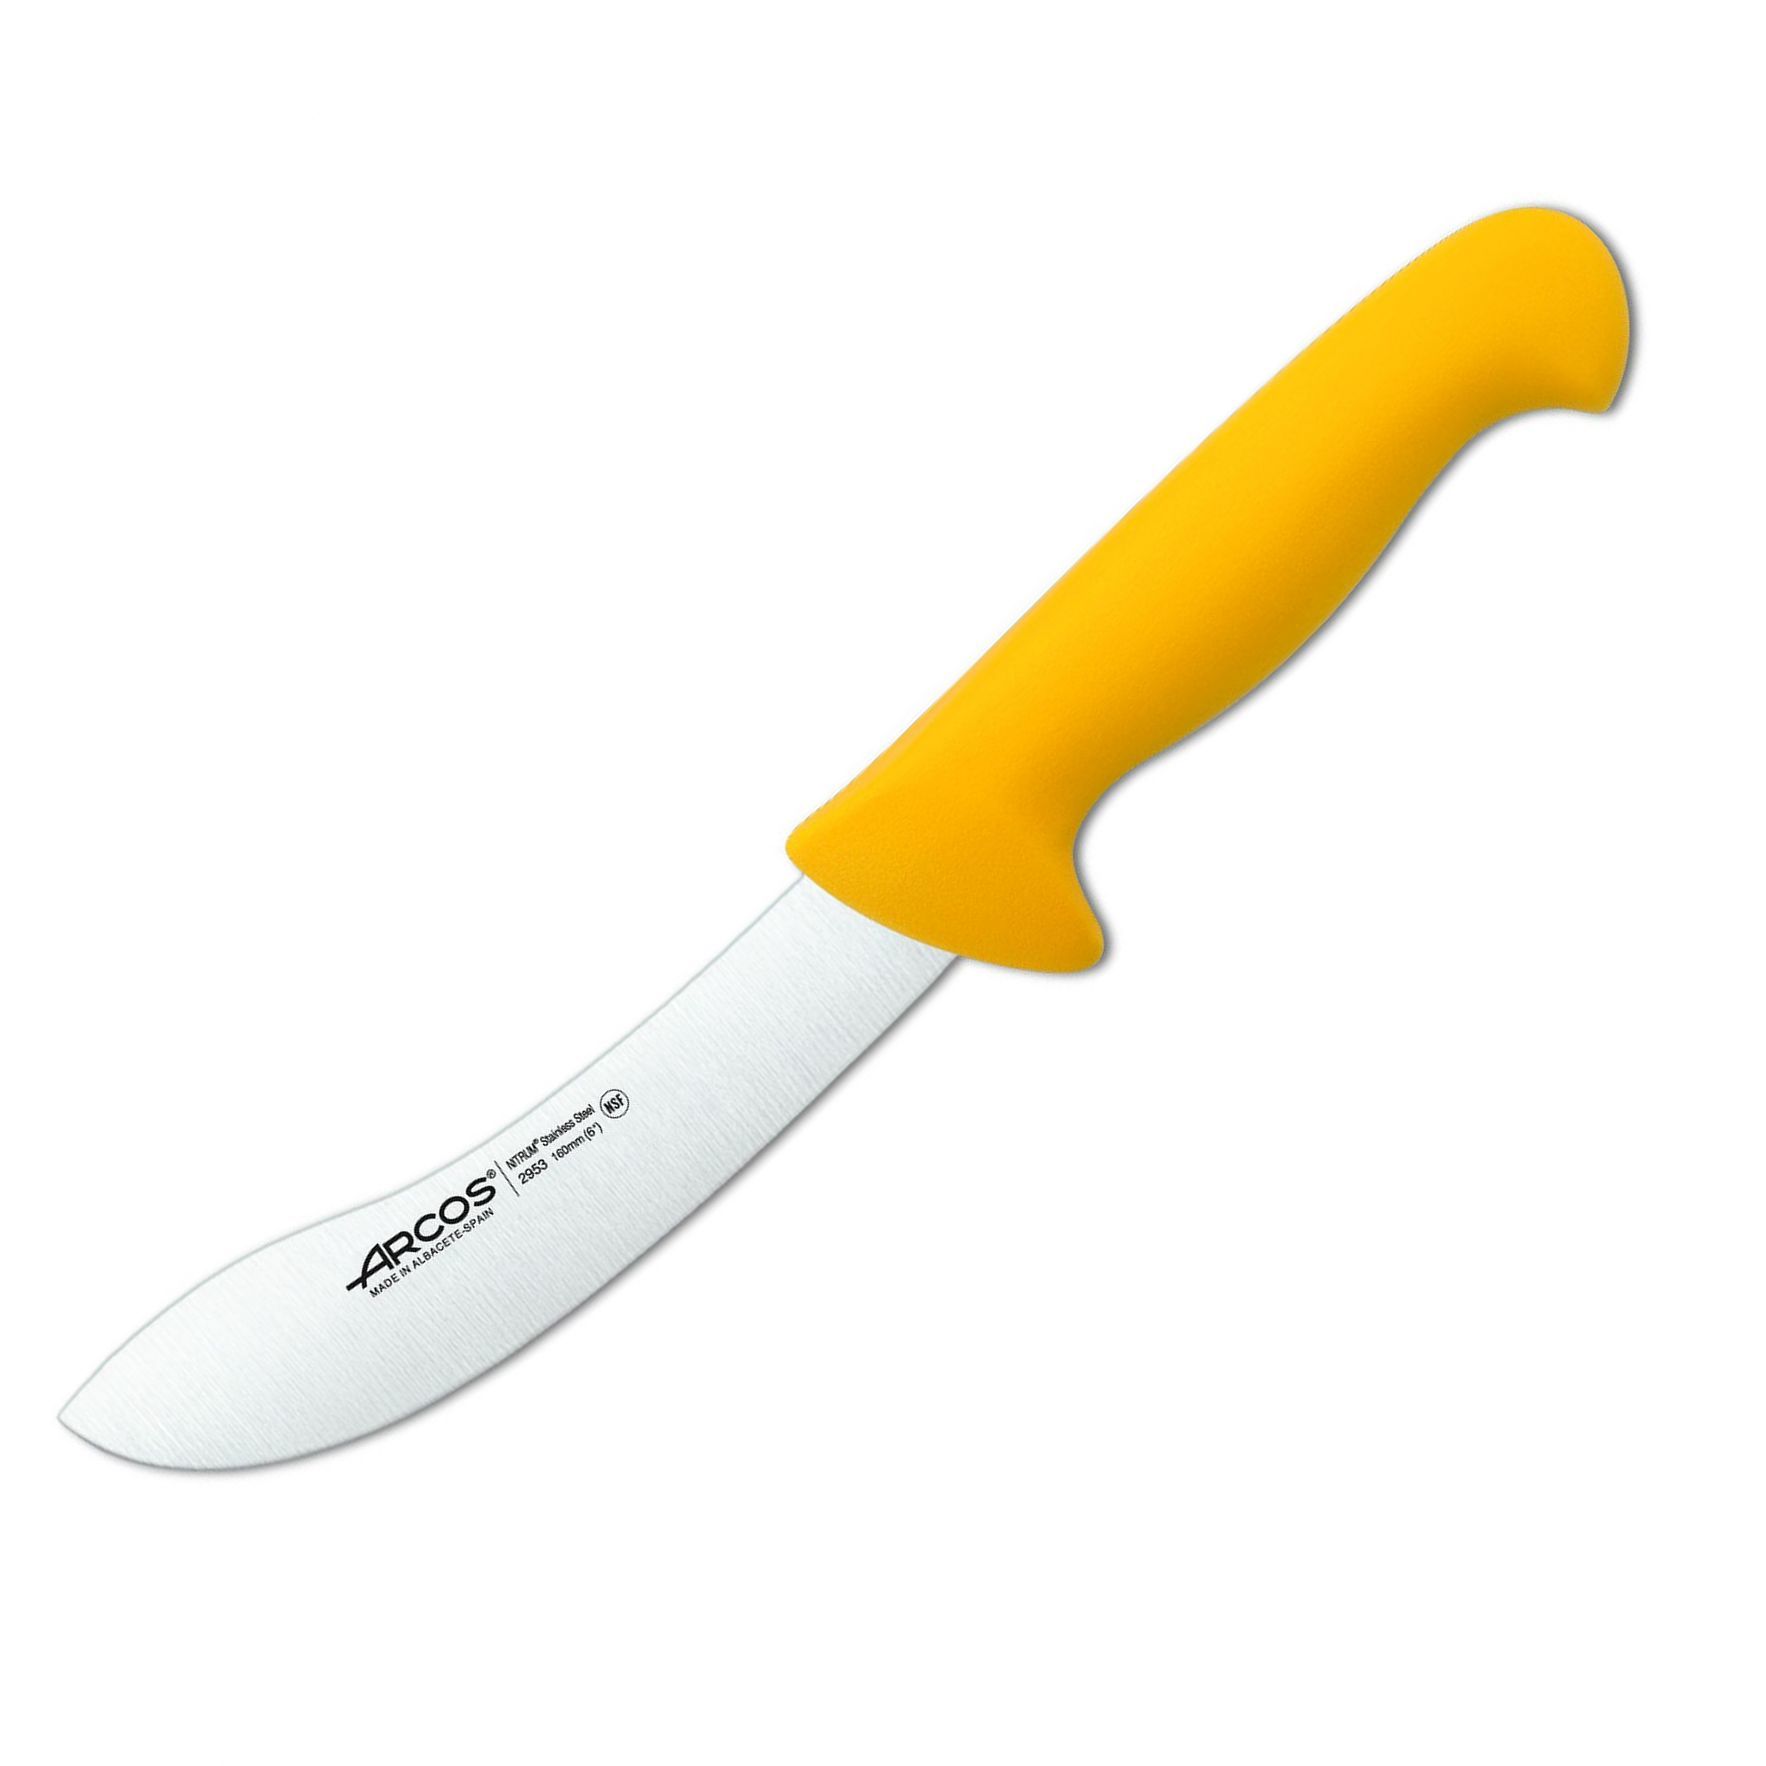 Нож для разделки 2900 2953, 160 мм, желтый